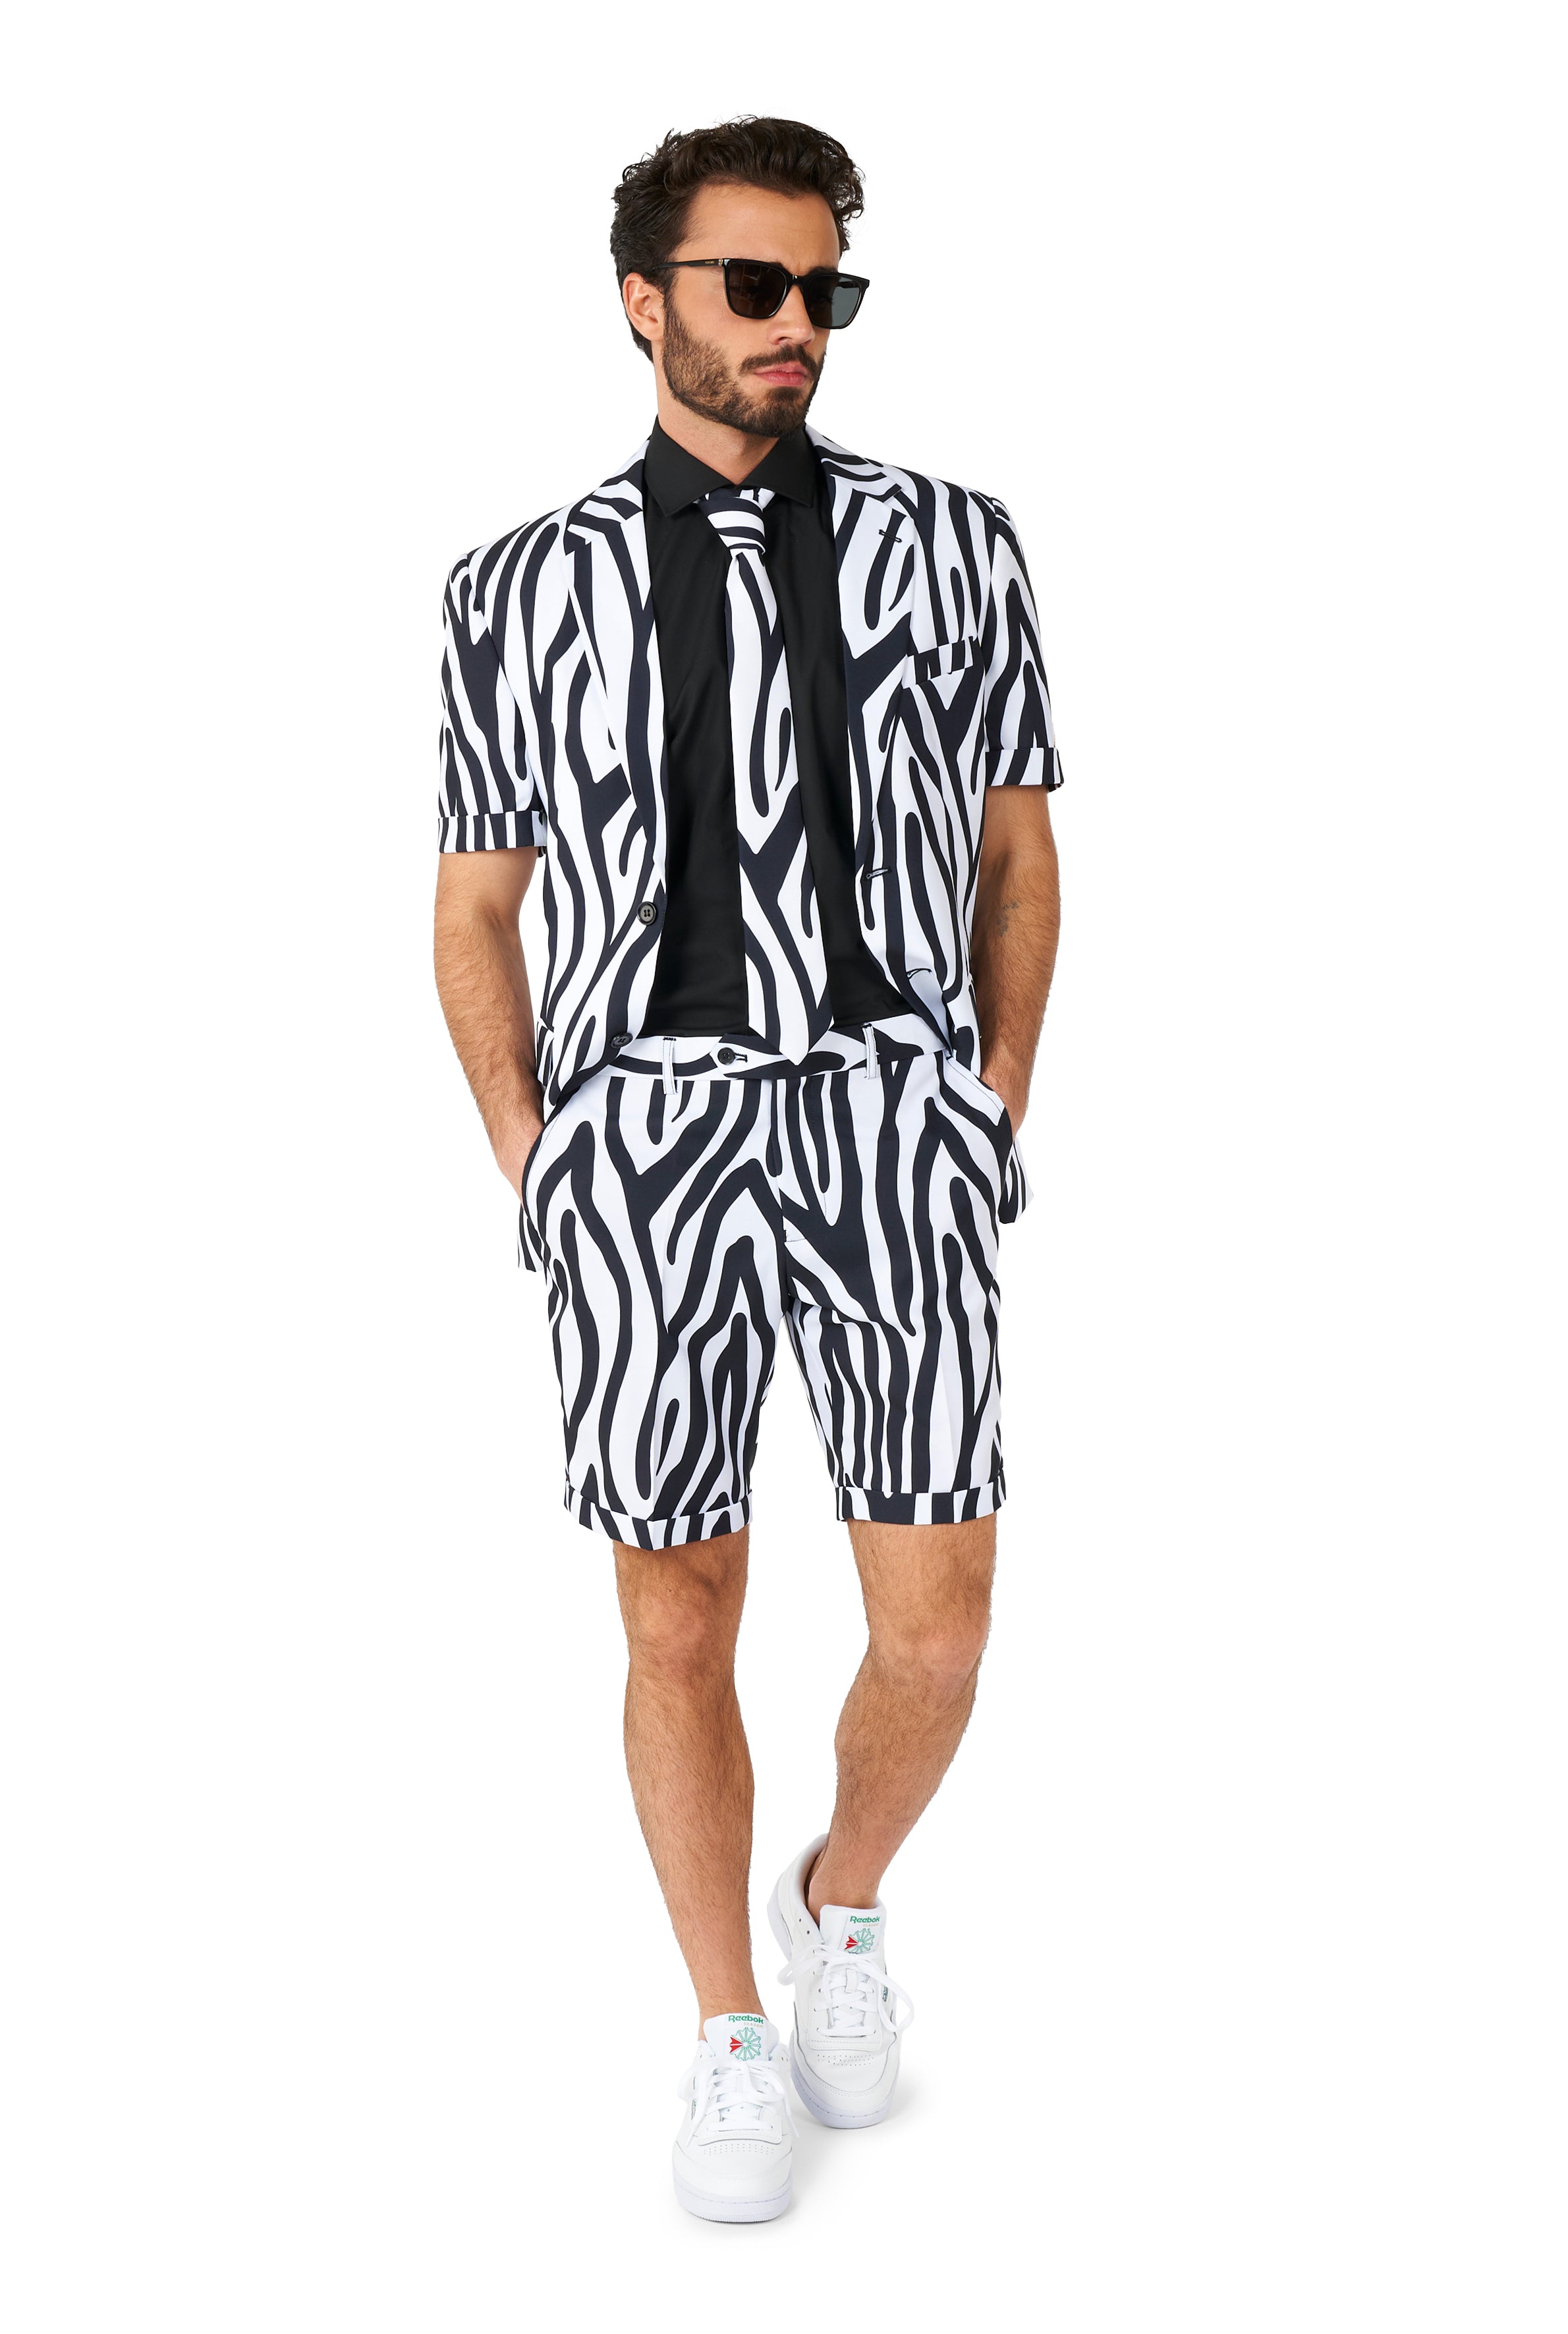 Costume OppoSuits SUMMER Zazzy Zebra